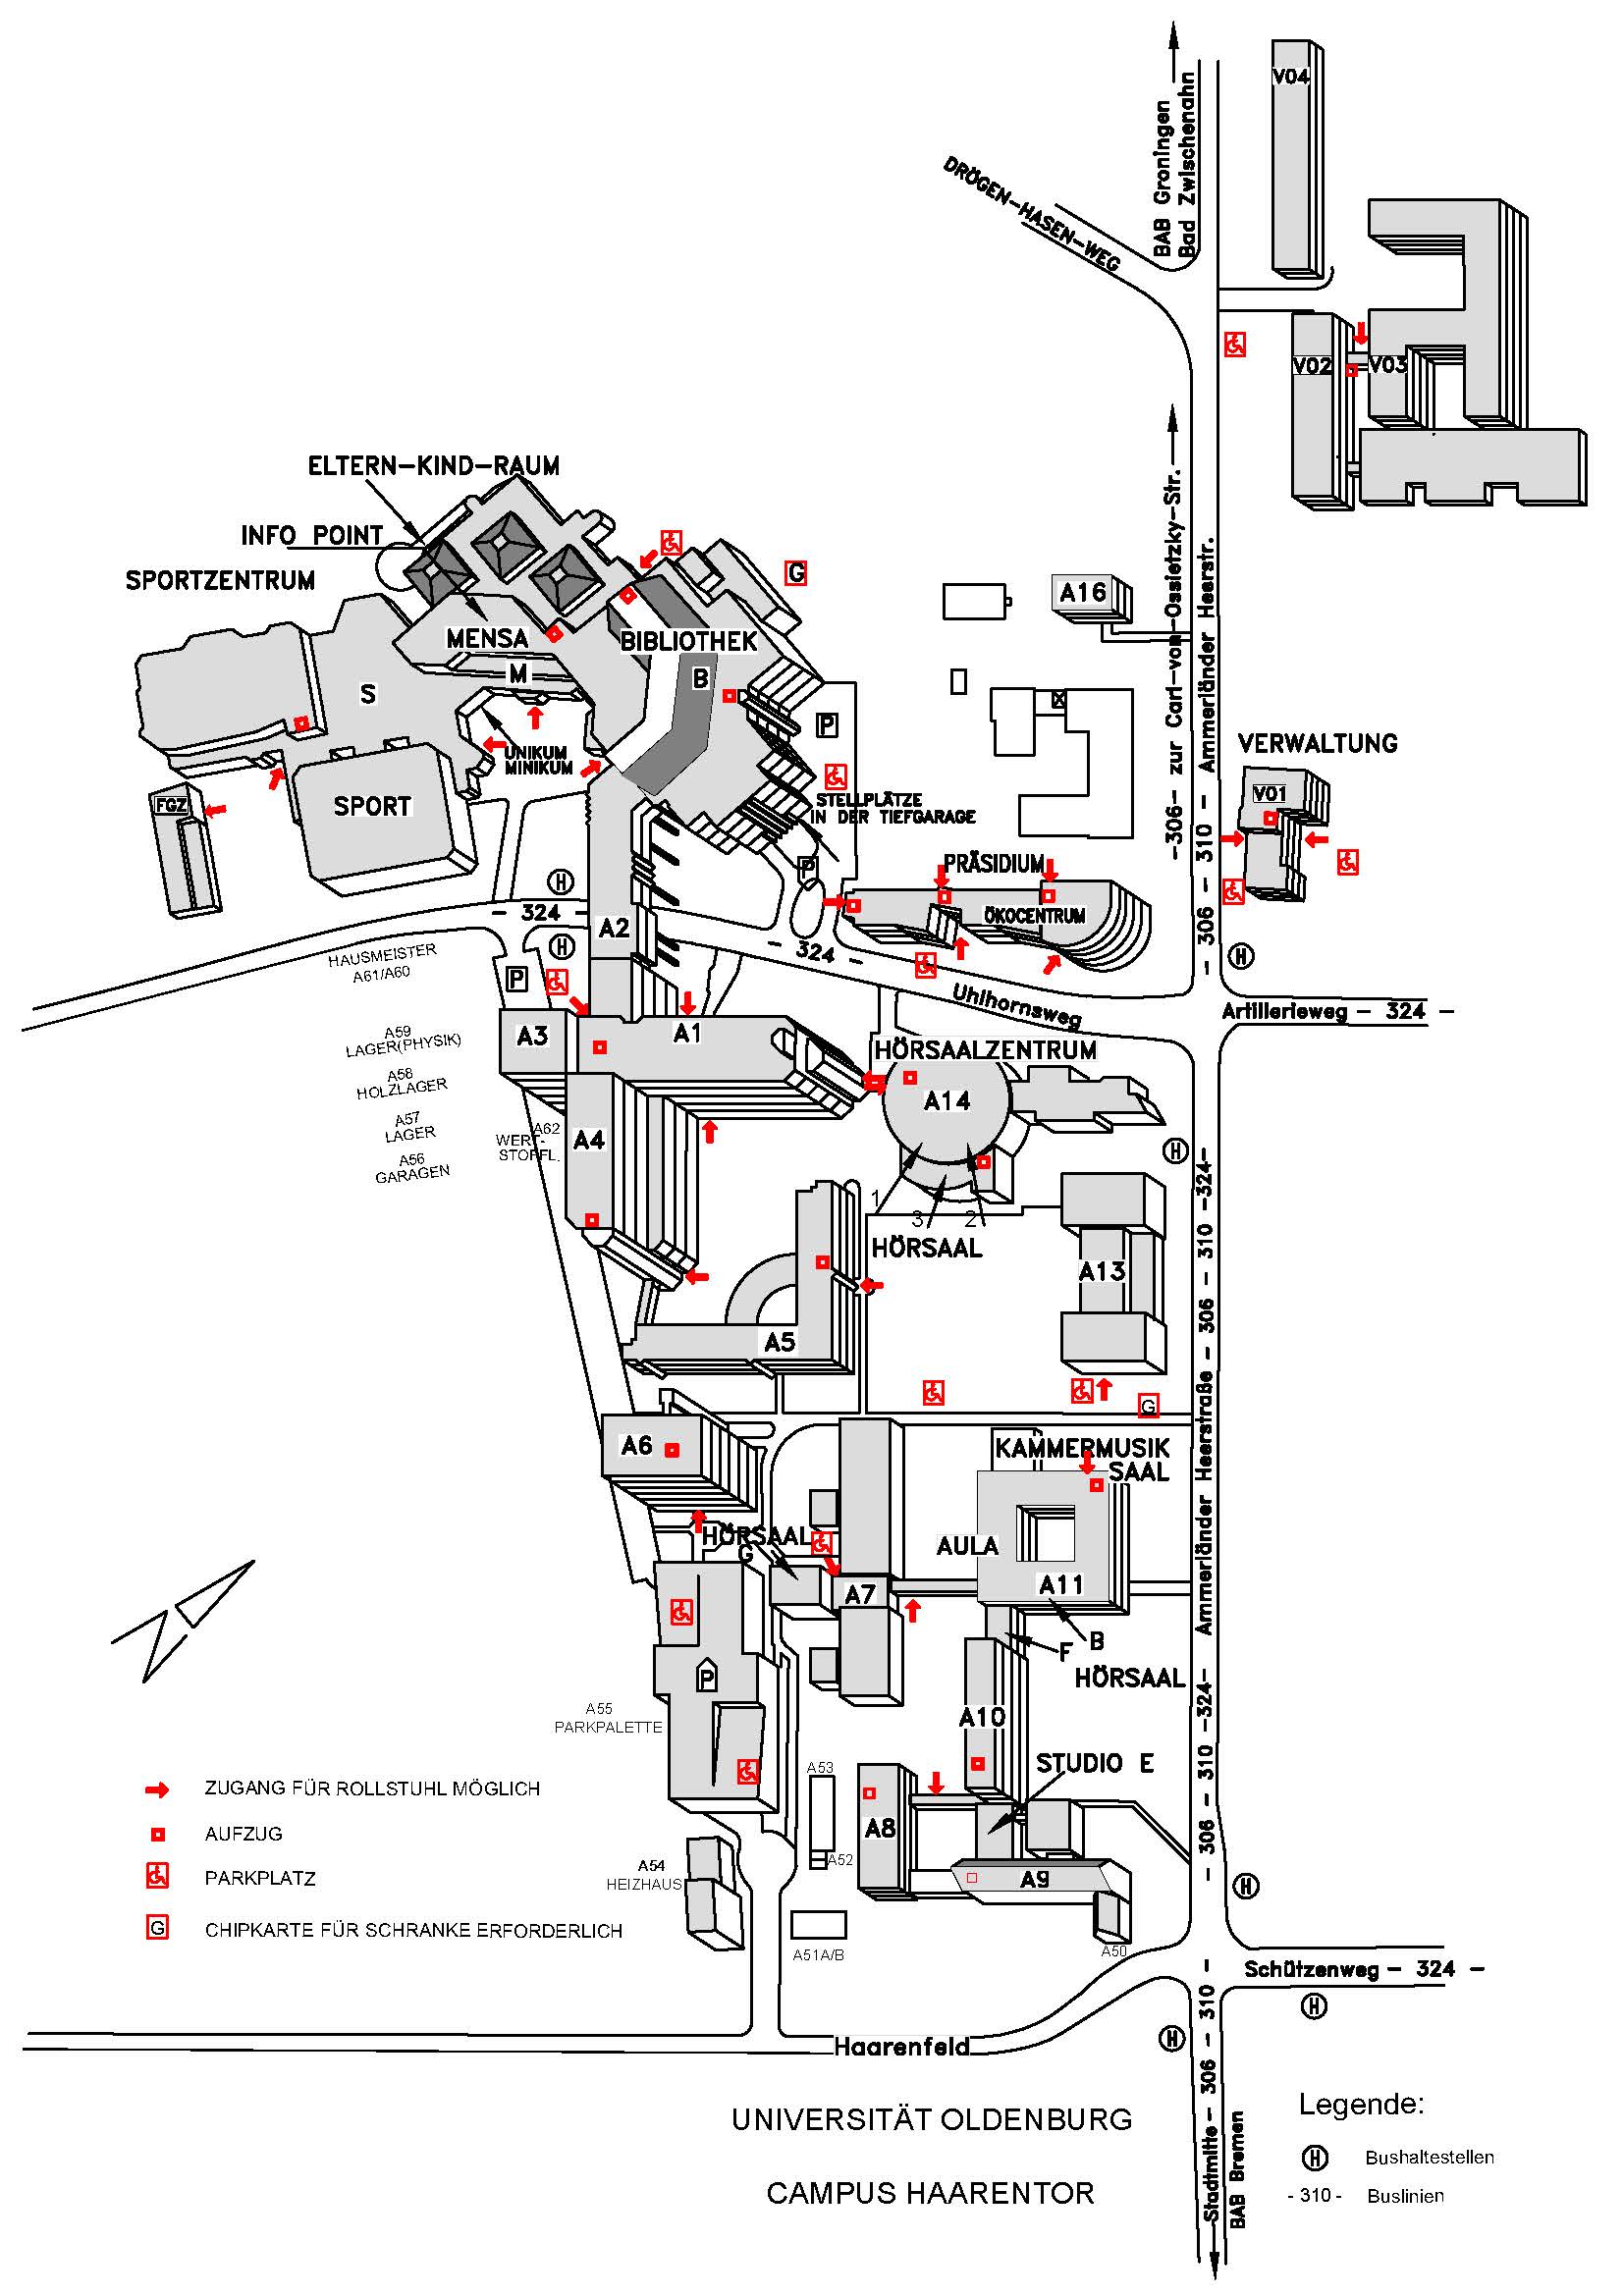 Map of Haarentor campus